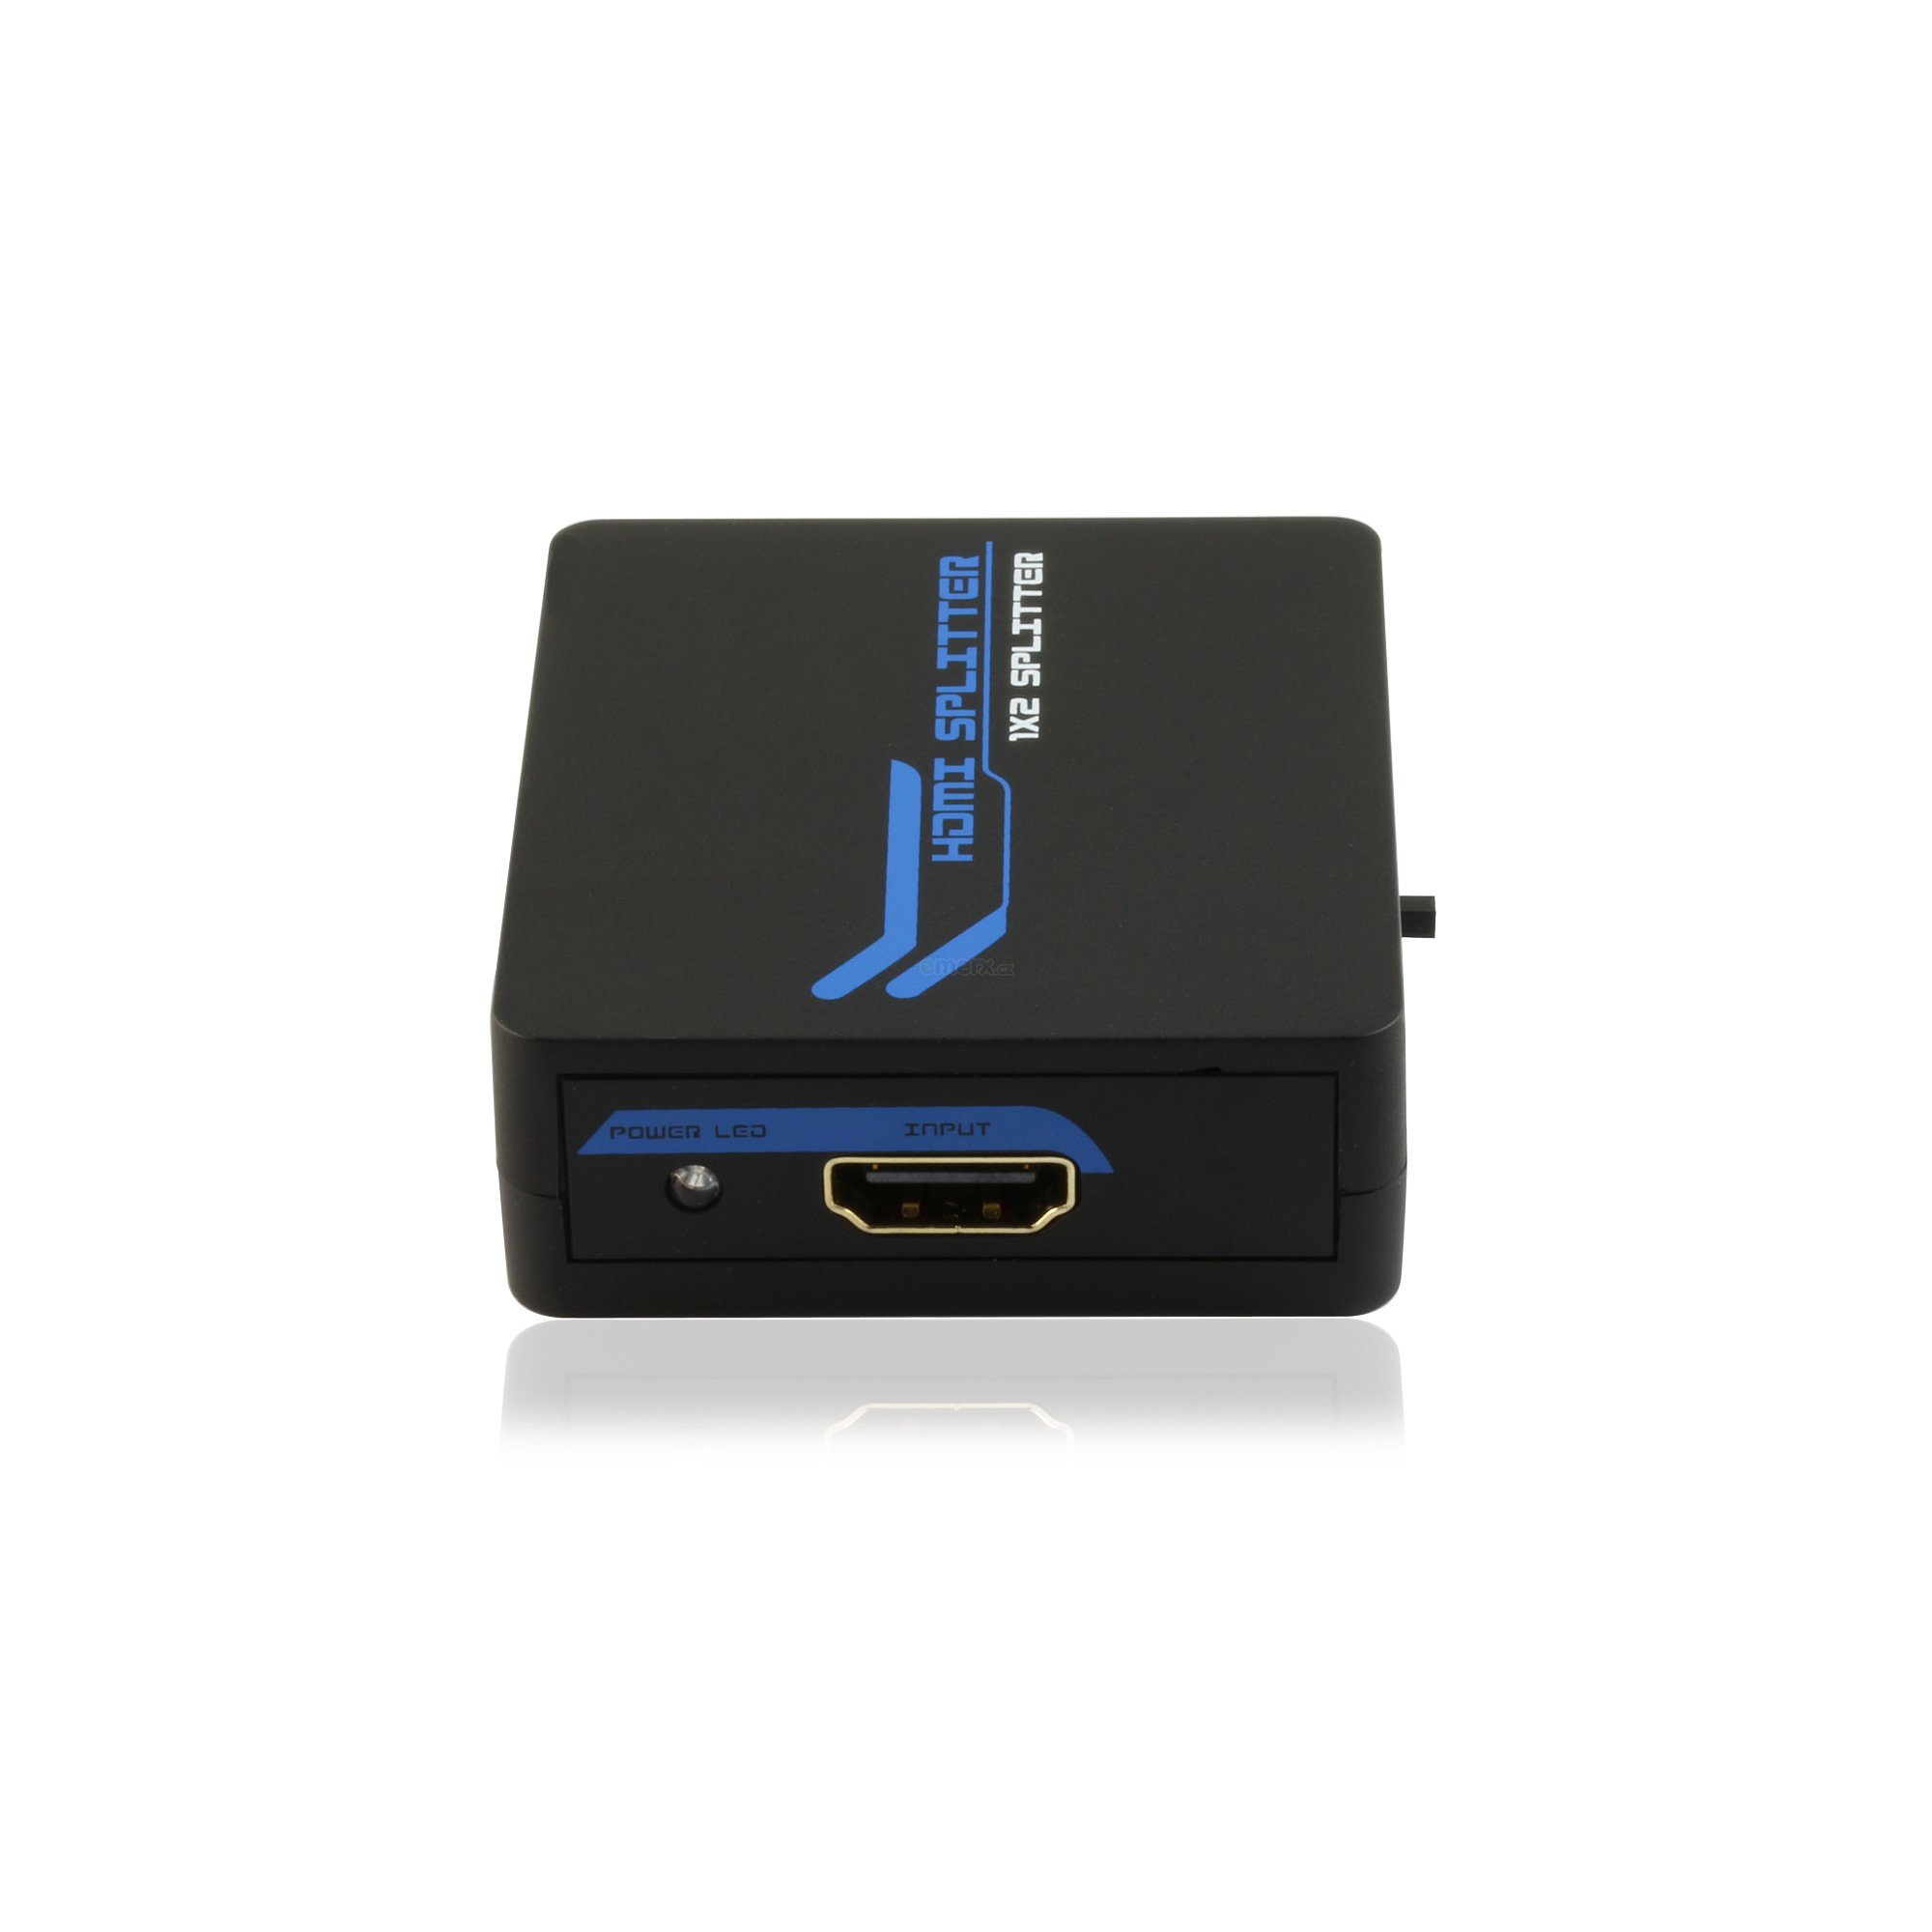 Elektronický převodník HDMI rozbočovač 2x 1 (PET0102M)